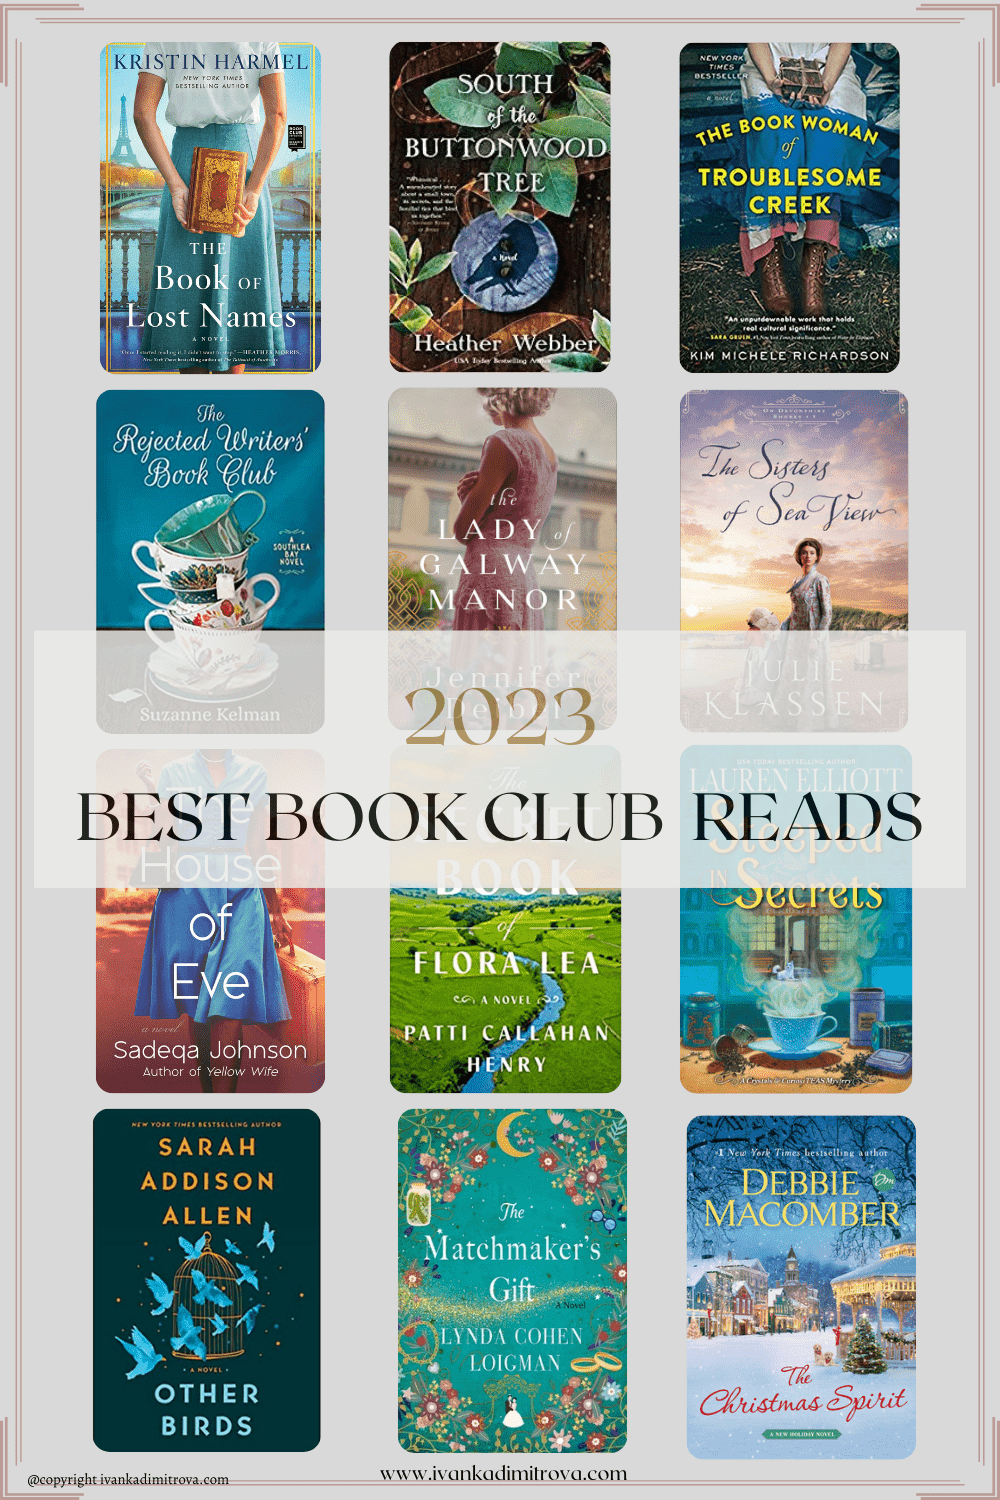 Best Book Club Books